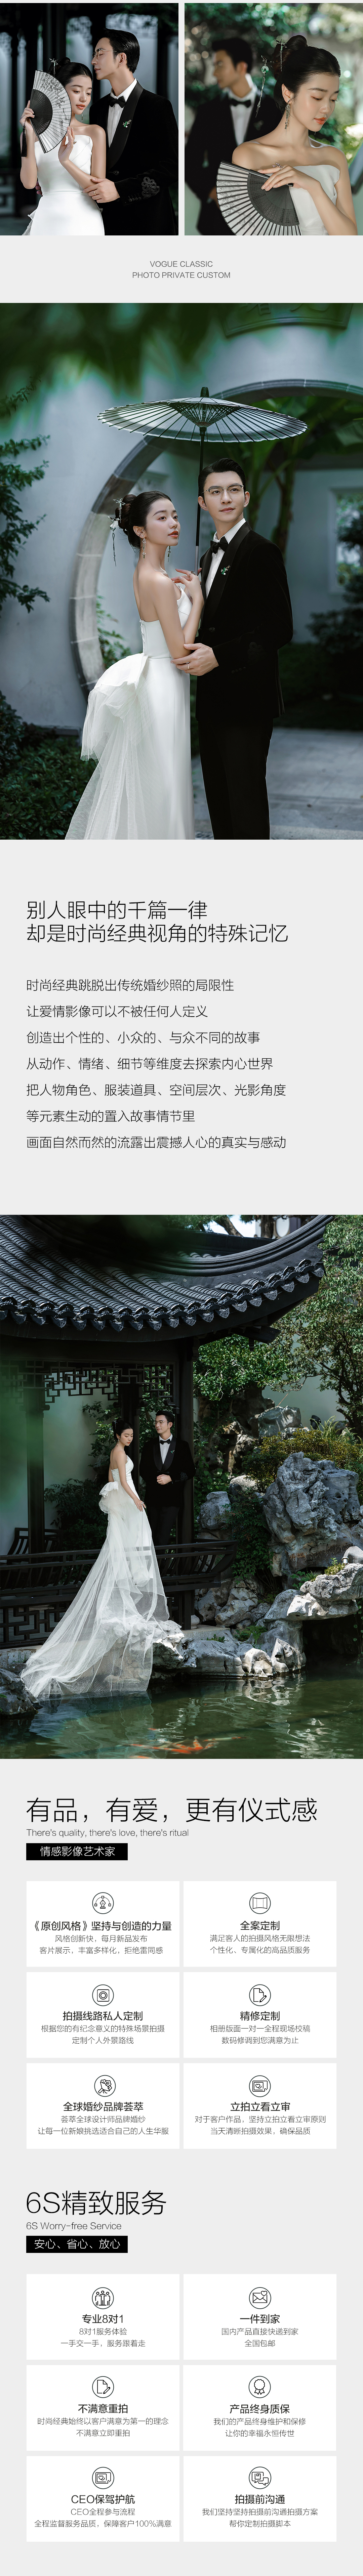 【品质研发】必拍园林&新中式婚纱照